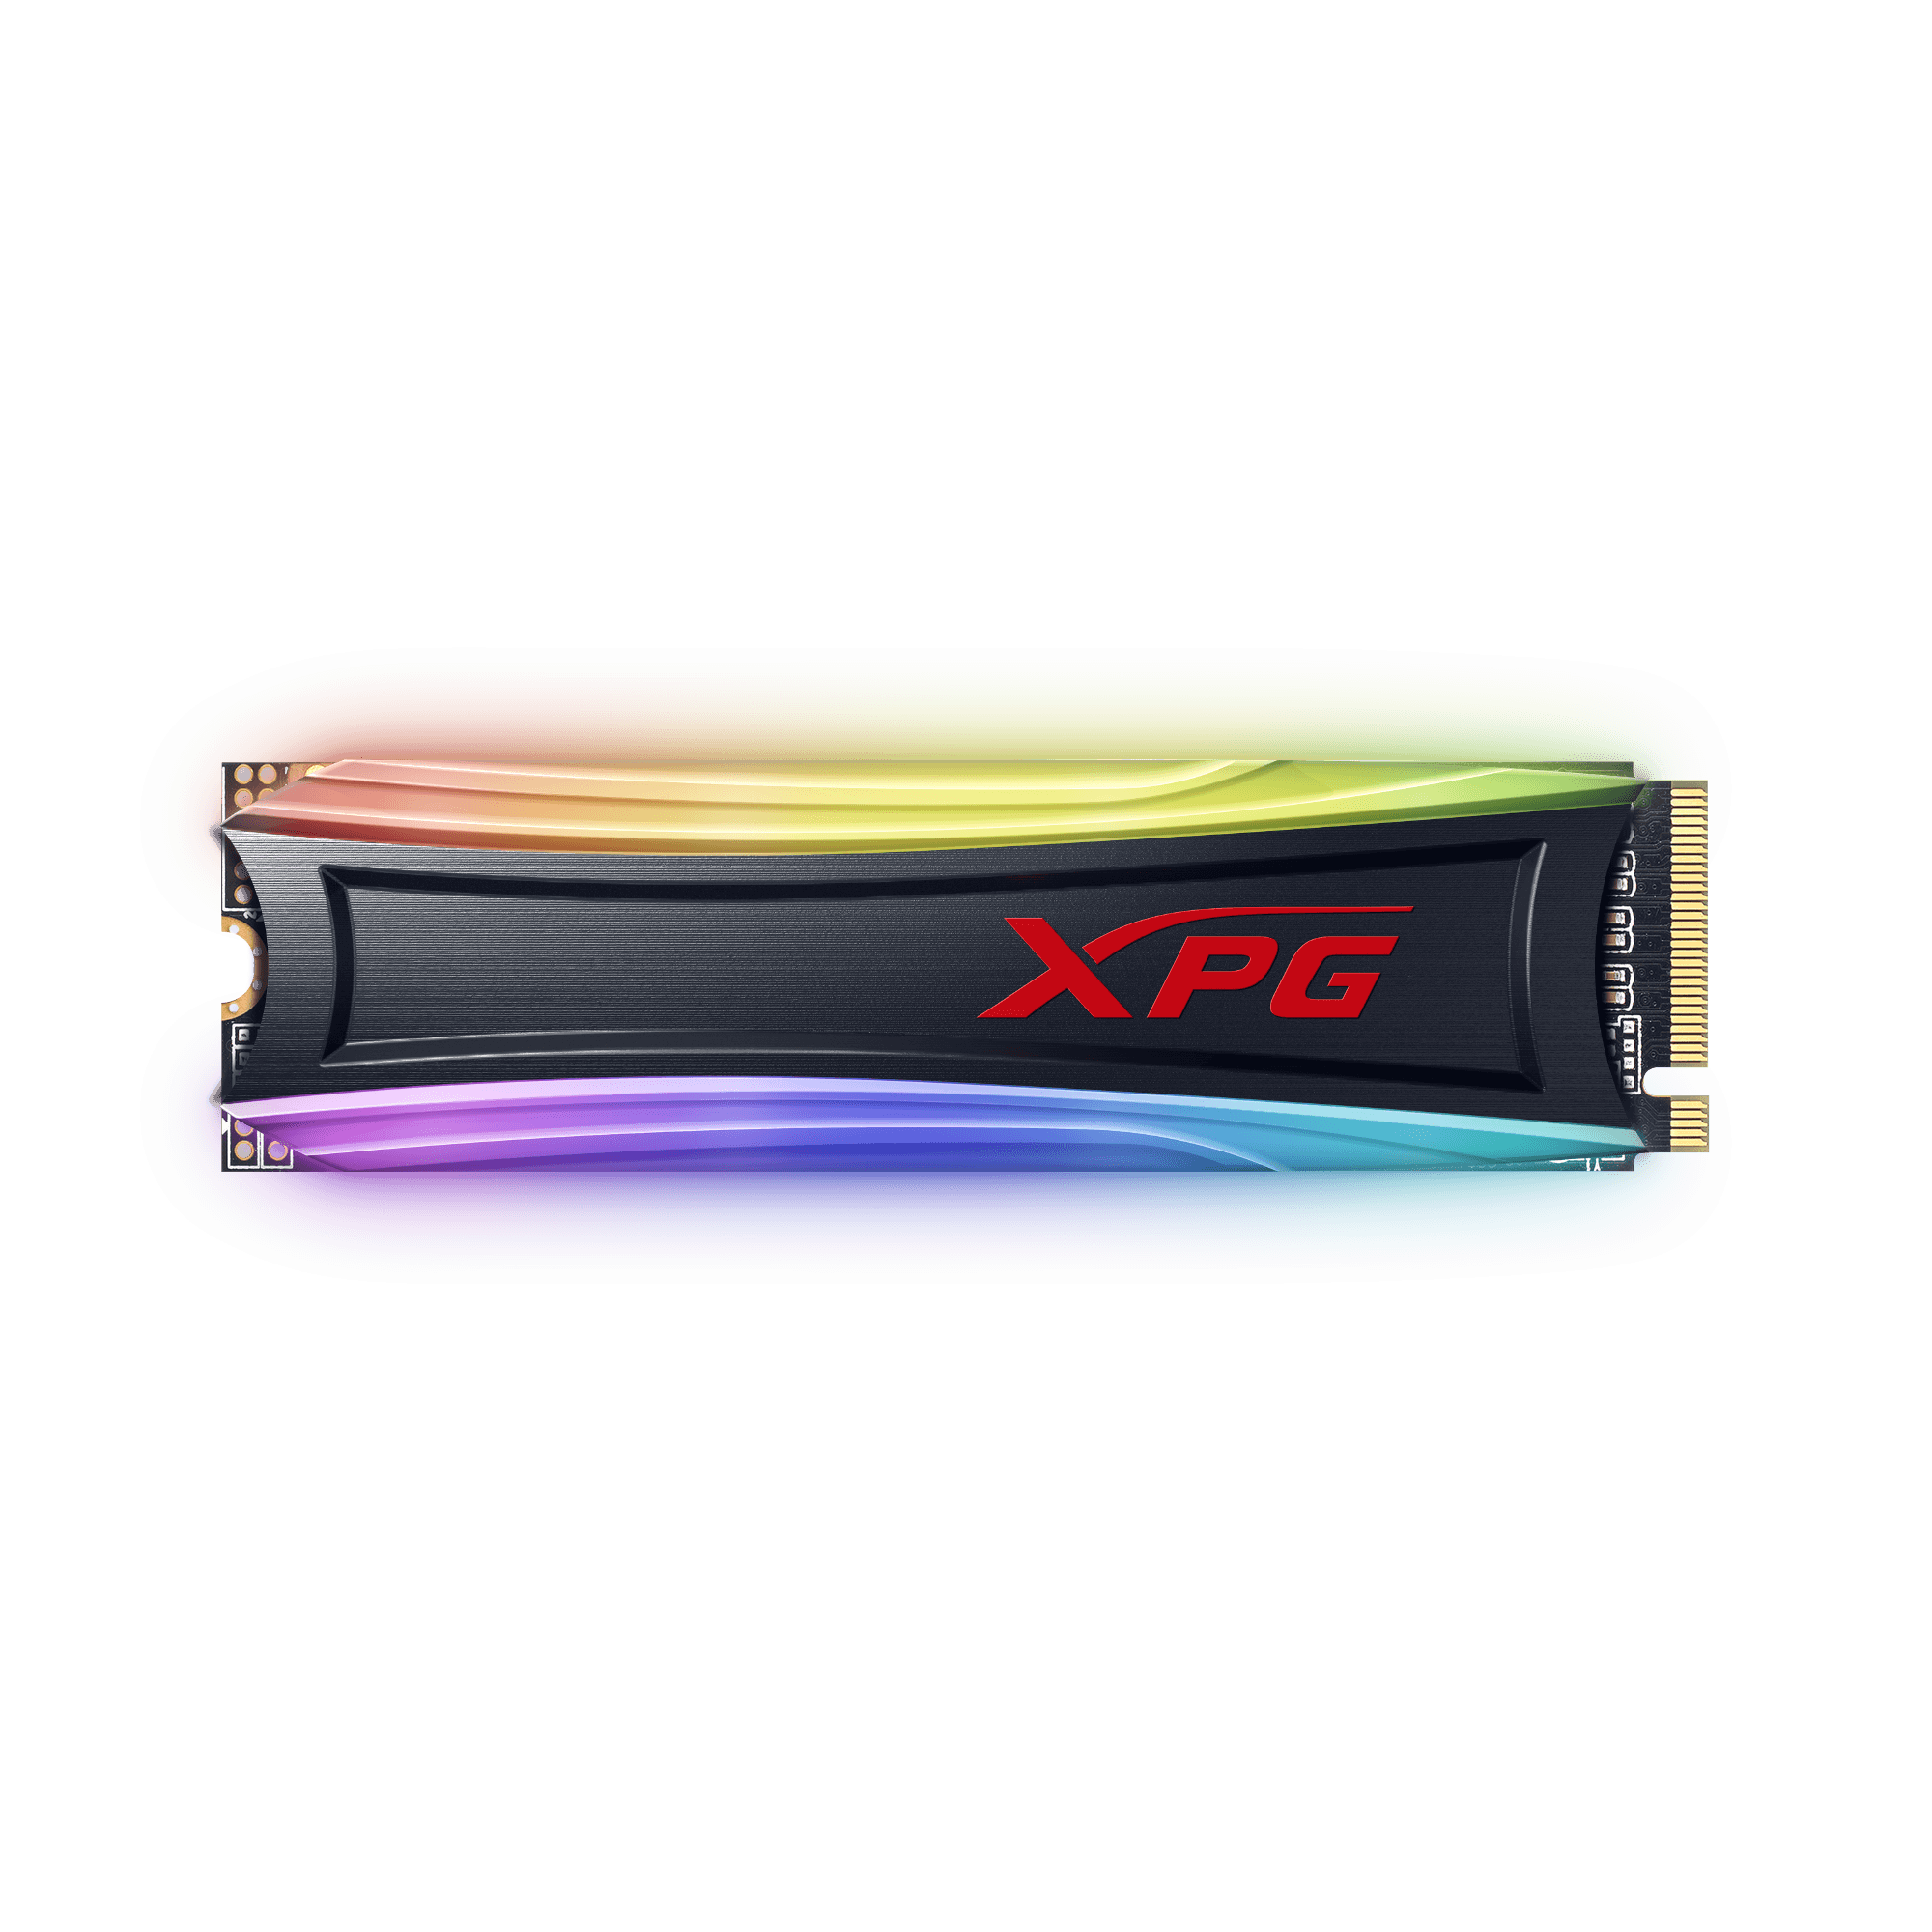 Ổ CỨNG SSD ADATA XPG SPECTRIX S40G RGB 256GB PCIE NVME 3X4 ĐỌC 3500MB/S 3000MB/S (AS40G-256GT-C)